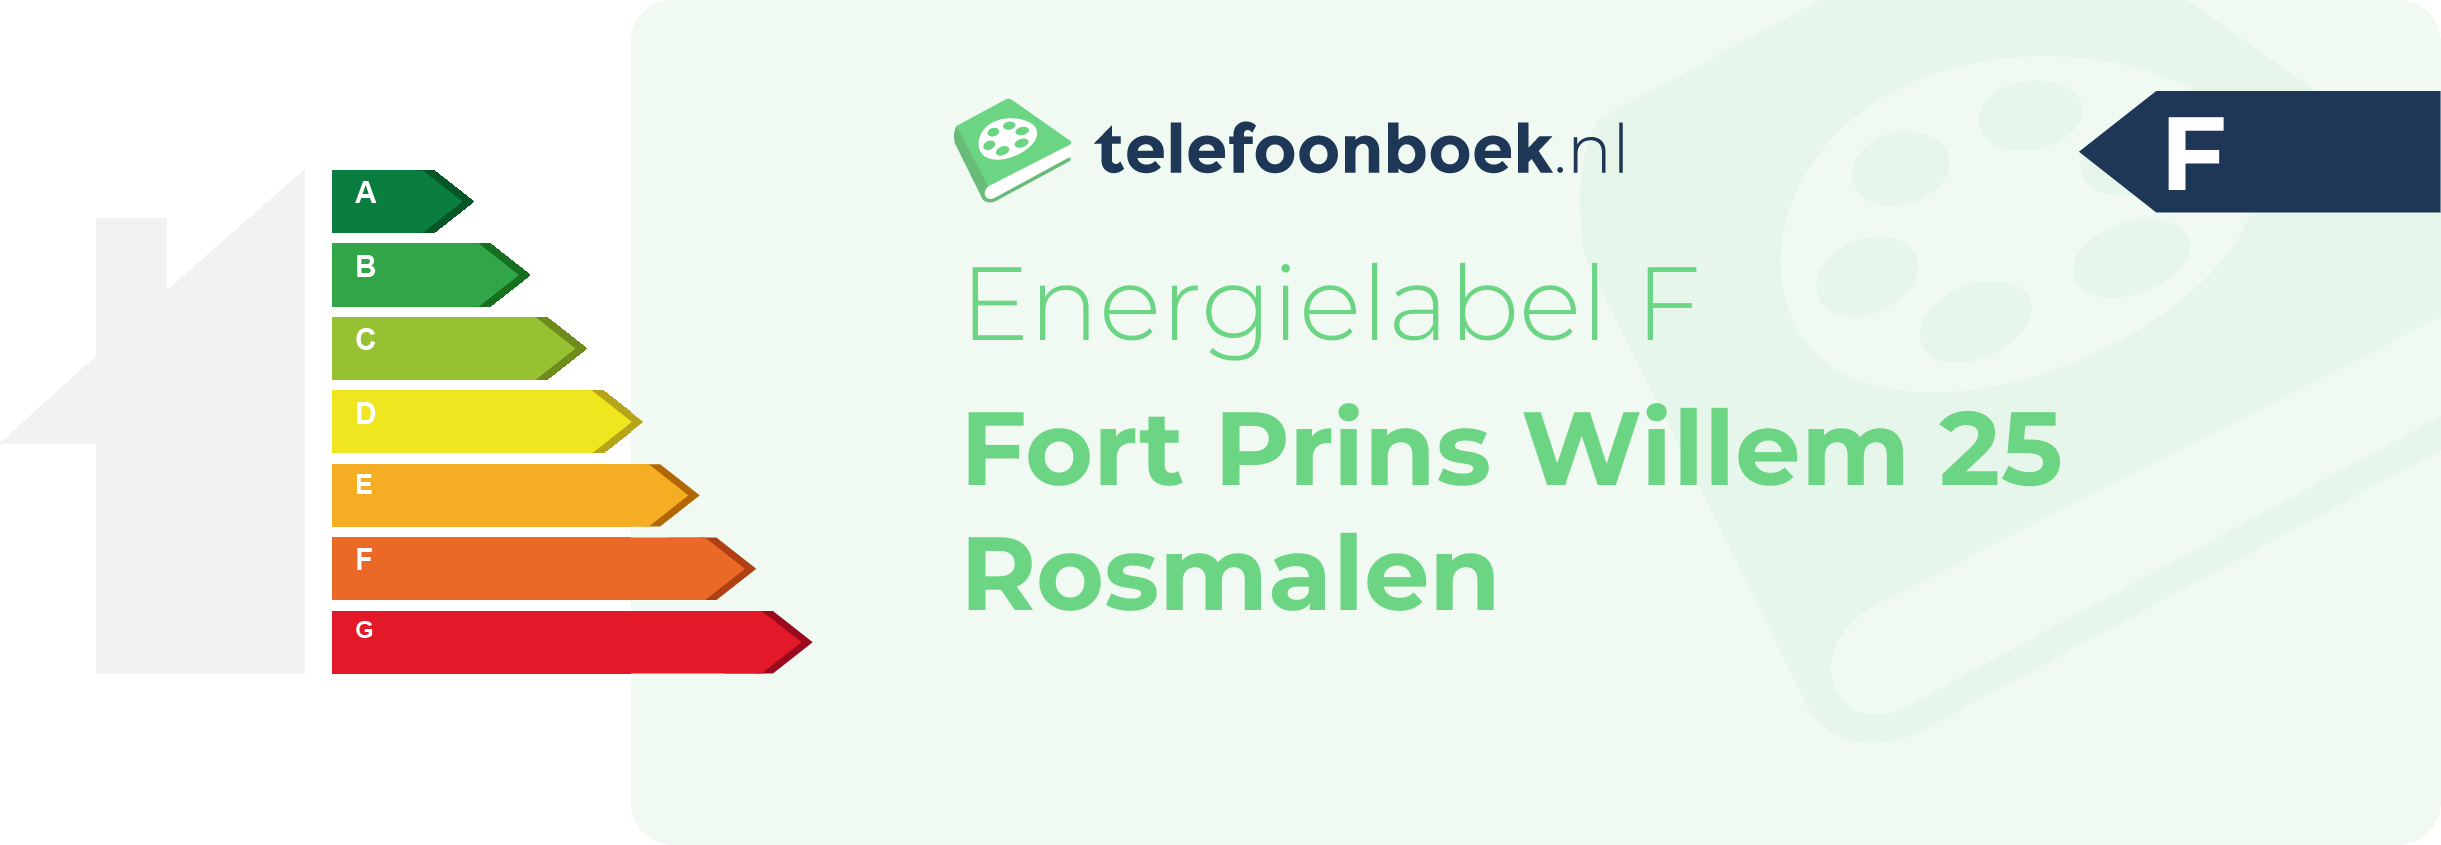 Energielabel Fort Prins Willem 25 Rosmalen